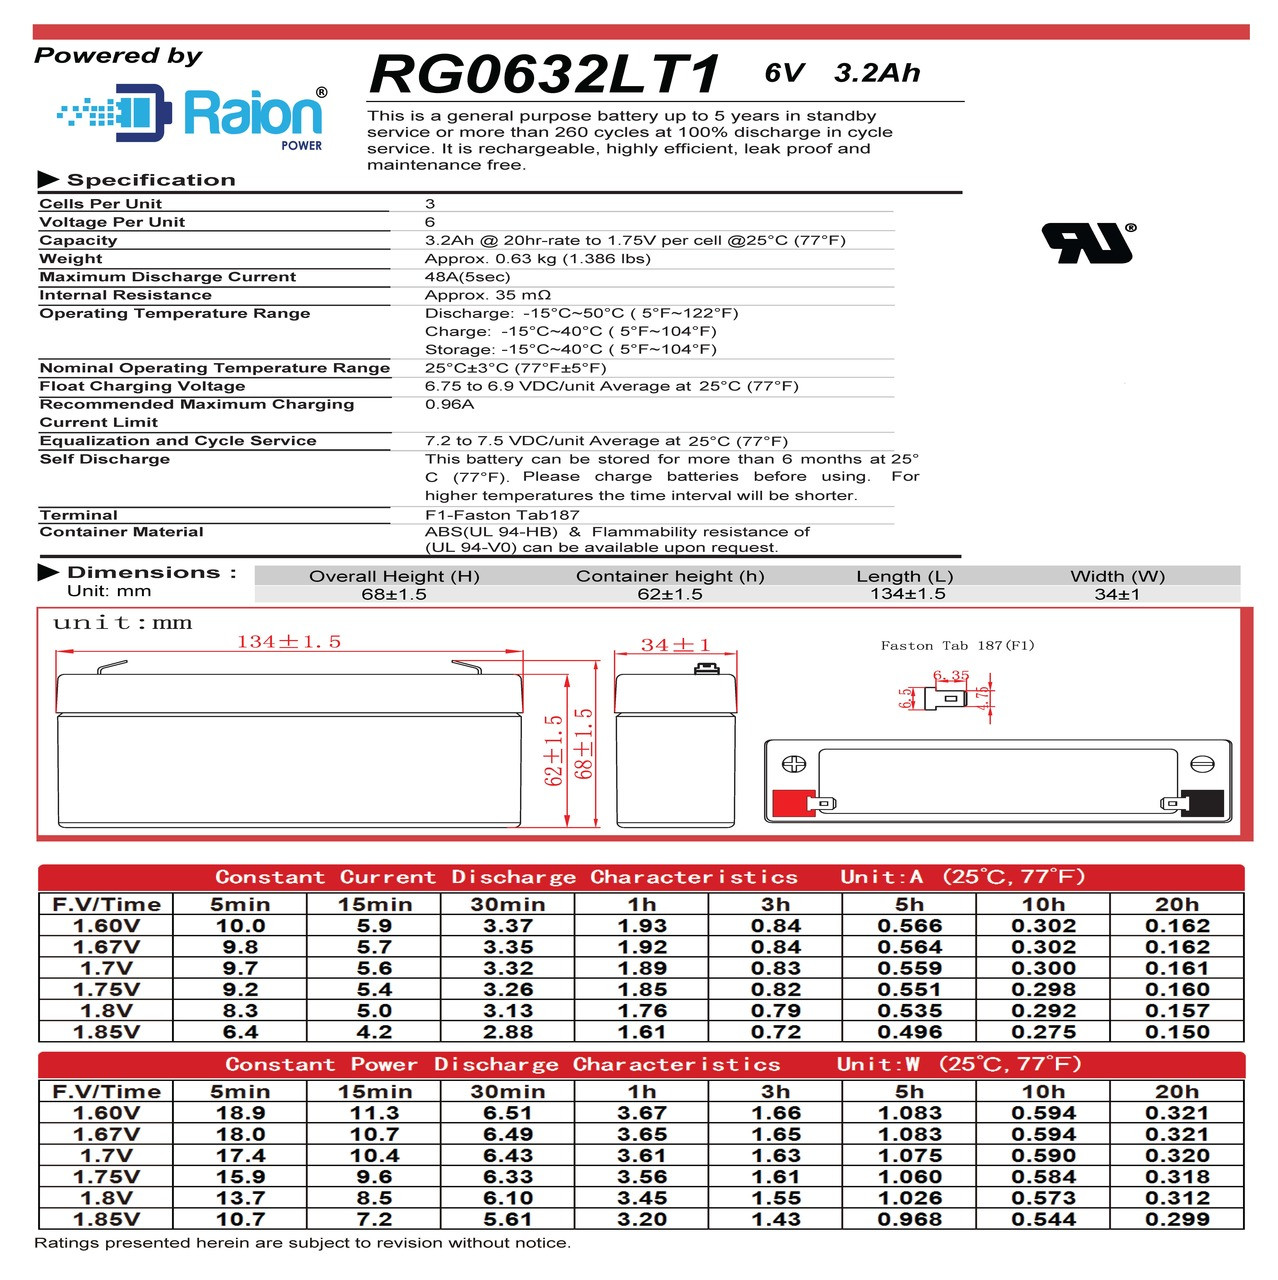 Raion Power RG0632LT1 6V 3.2Ah Battery Data Sheet for Health o meter 591KL Scale